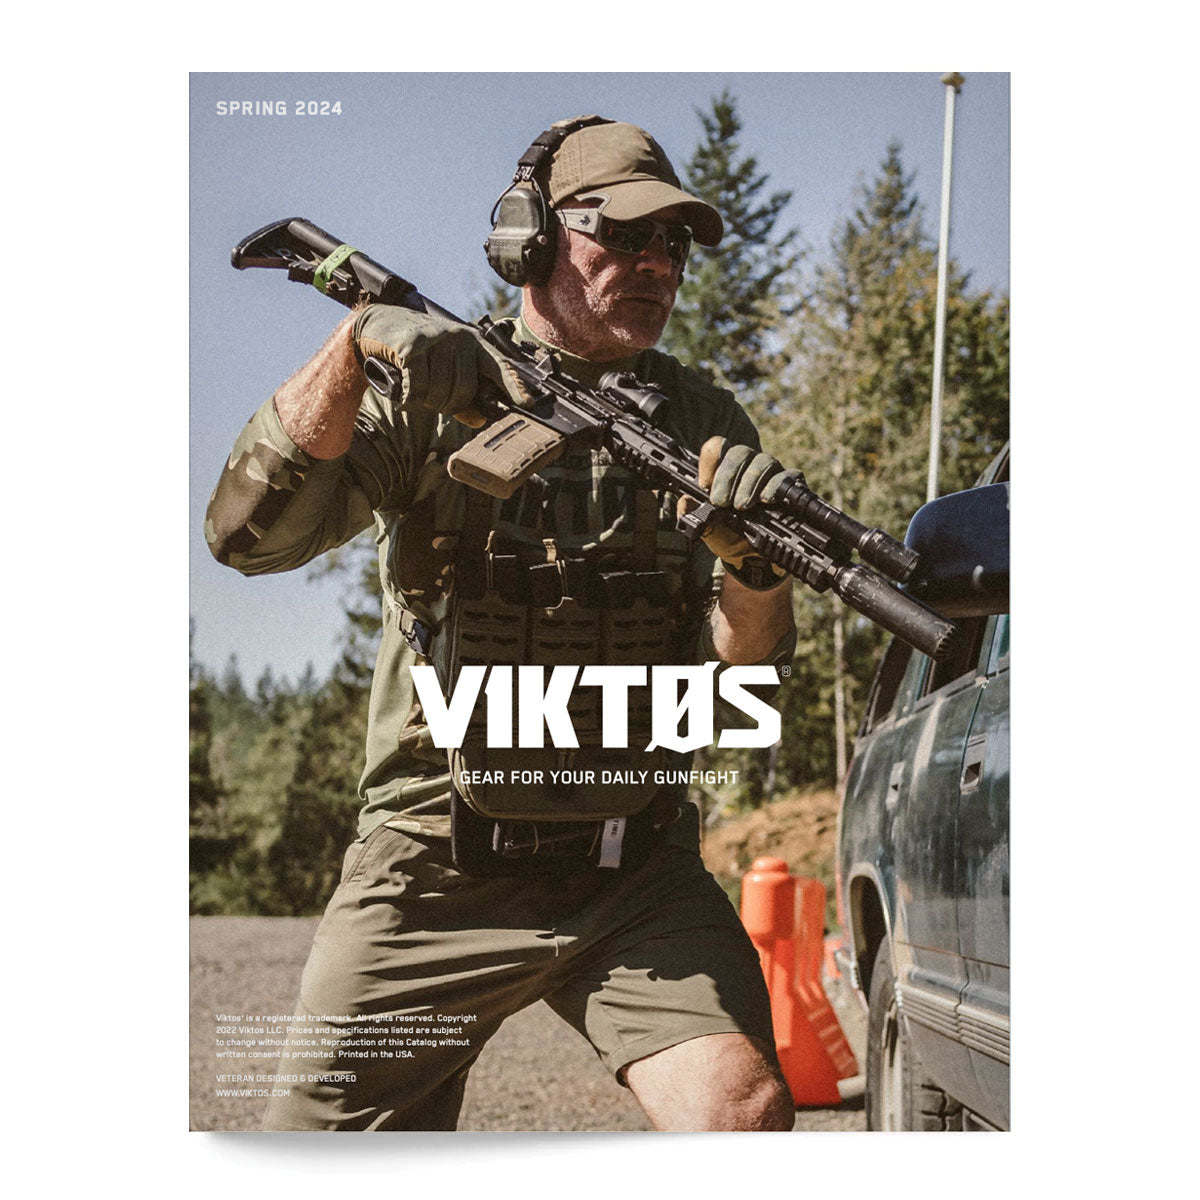 VIKTOS Digital Catalogue 2024 Media VIKTOS Tactical Gear Supplier Tactical Distributors Australia